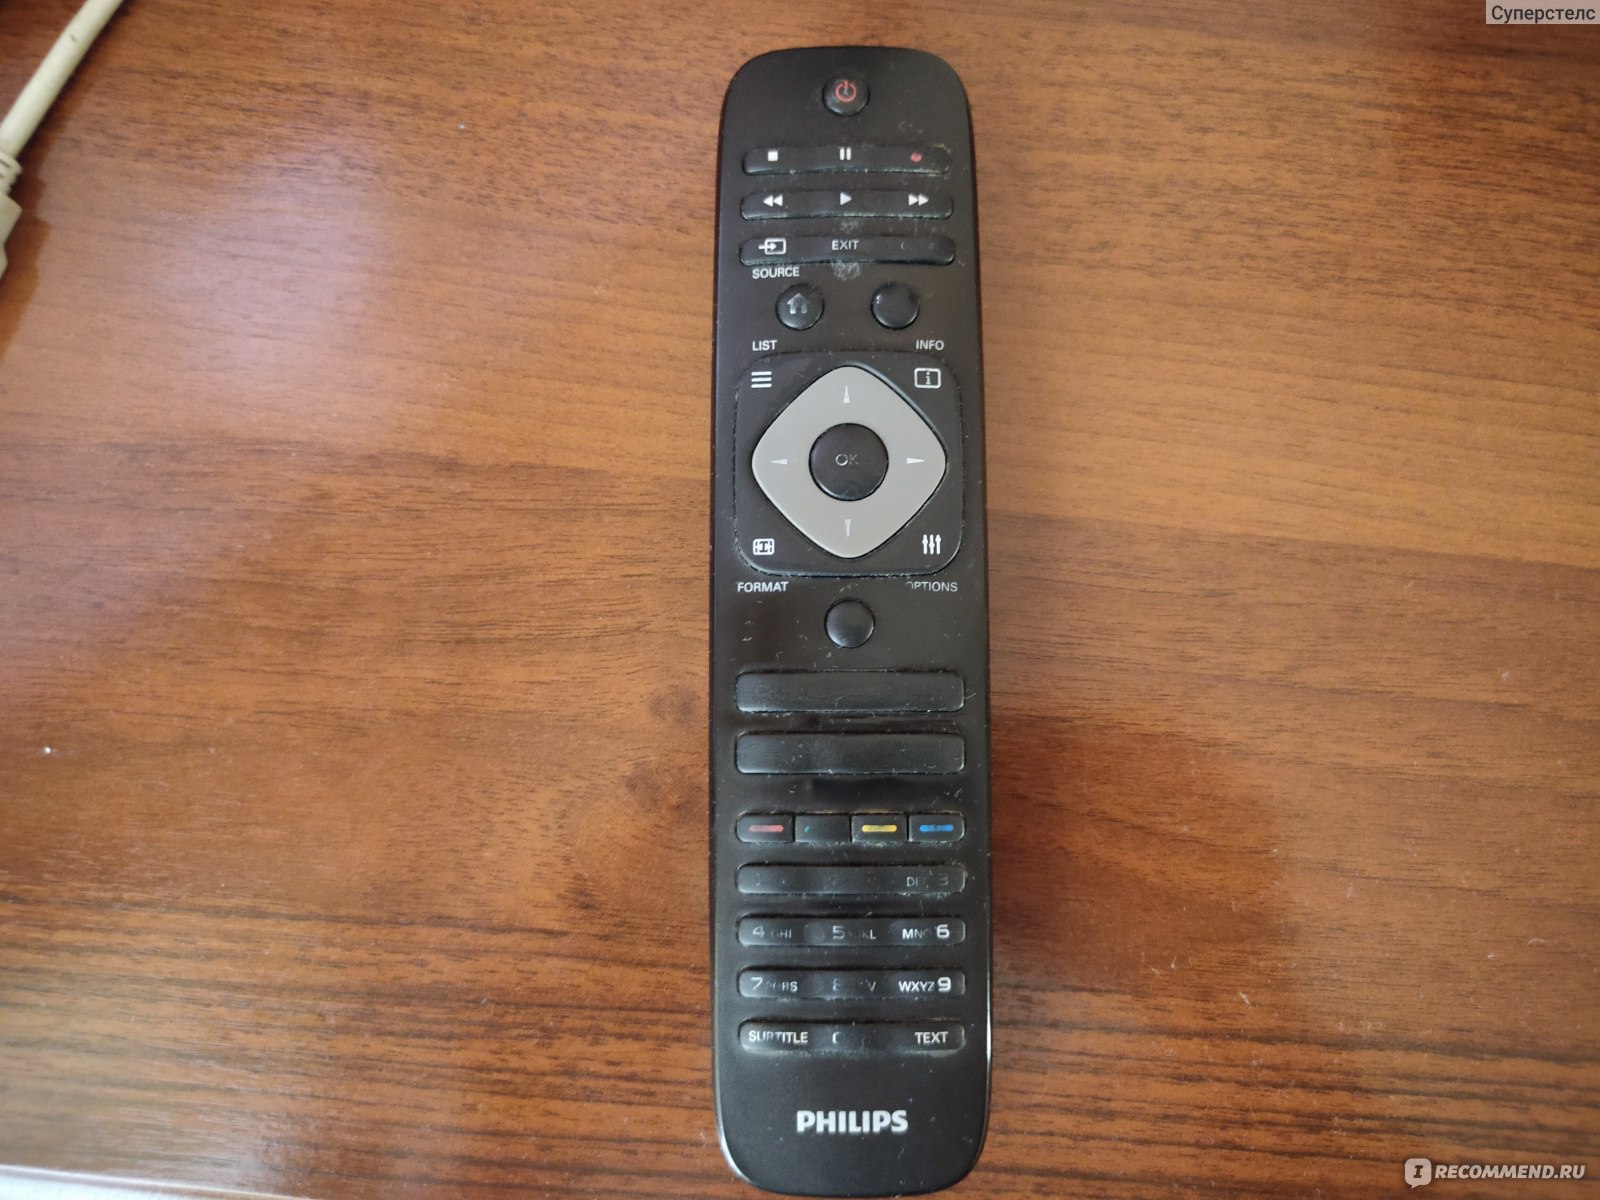 TV Remote for Philips | Remote